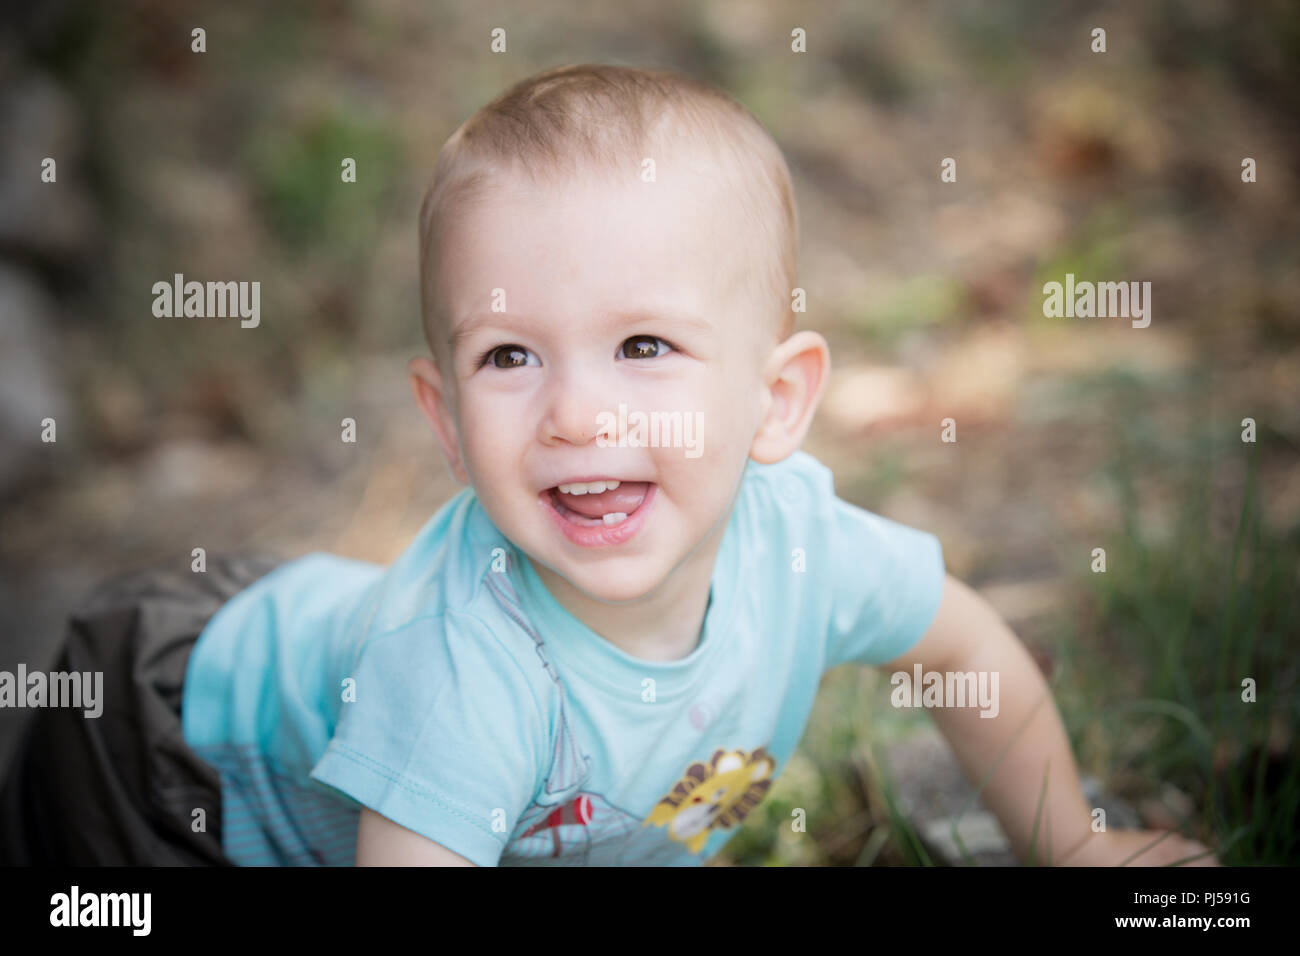 baby smile Stock Photo